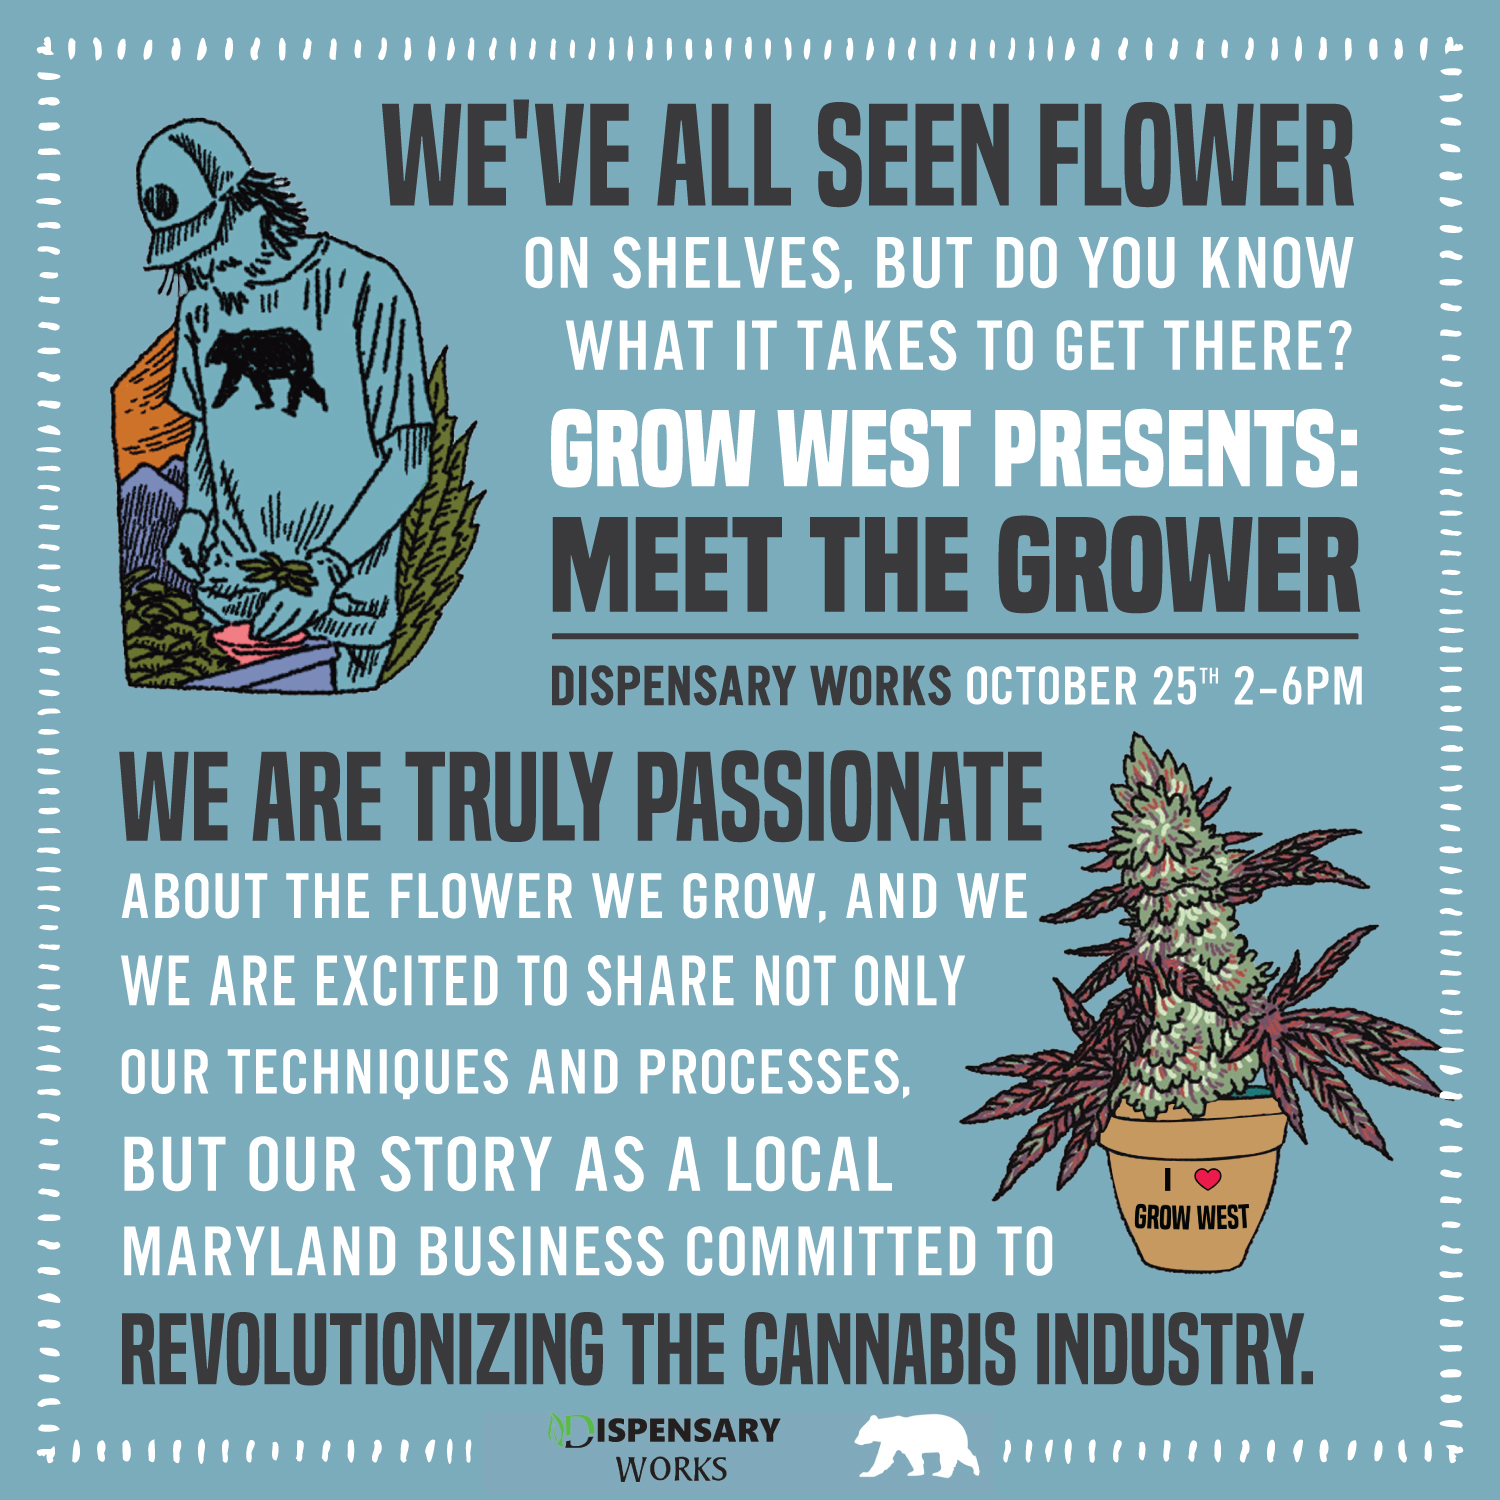 Grow West: Meet the Grower Event